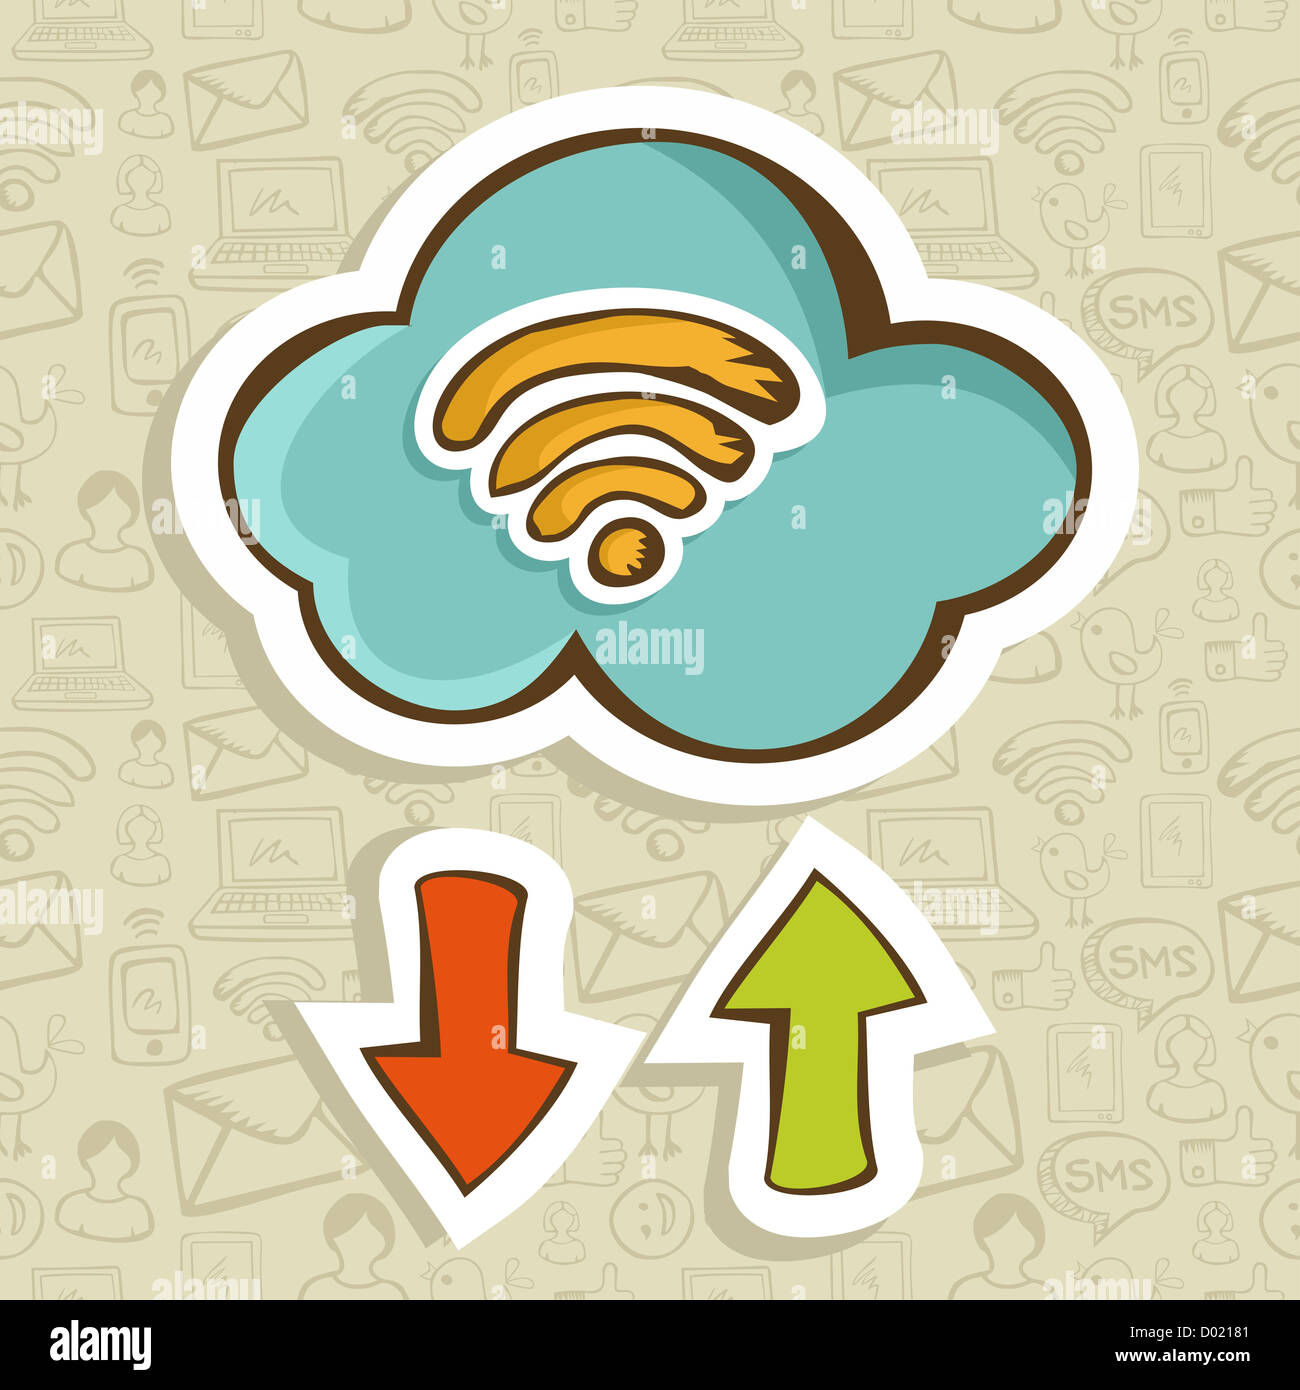 Caricature de cloud computing avec téléchargement et l'icône de flèche de téléchargement. Couches d'illustration vectorielle pour une manipulation facile et coloris. Banque D'Images